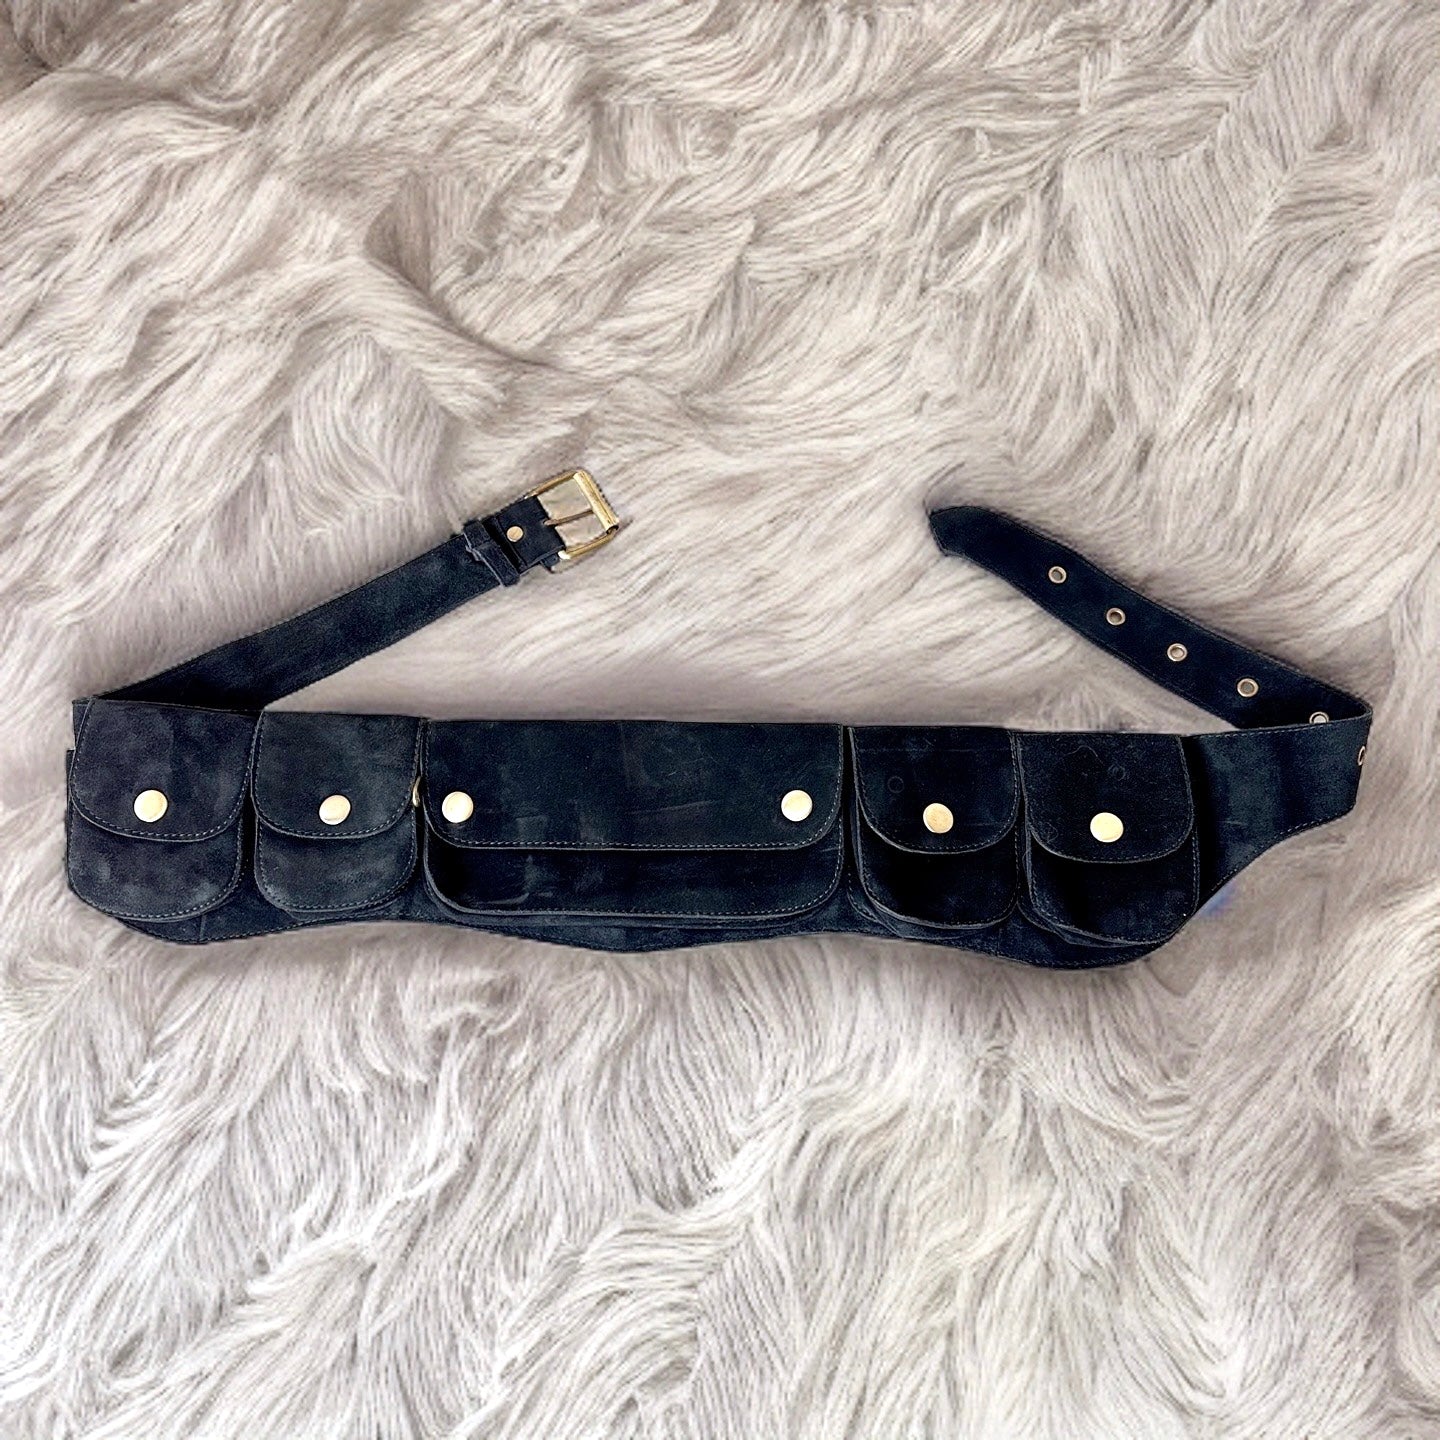 Genuine Leather Pocket Belt | Black Suede, 7 Pocket | money belt, travel belt, festival belt, vendor belt, belt bag, burning man belt